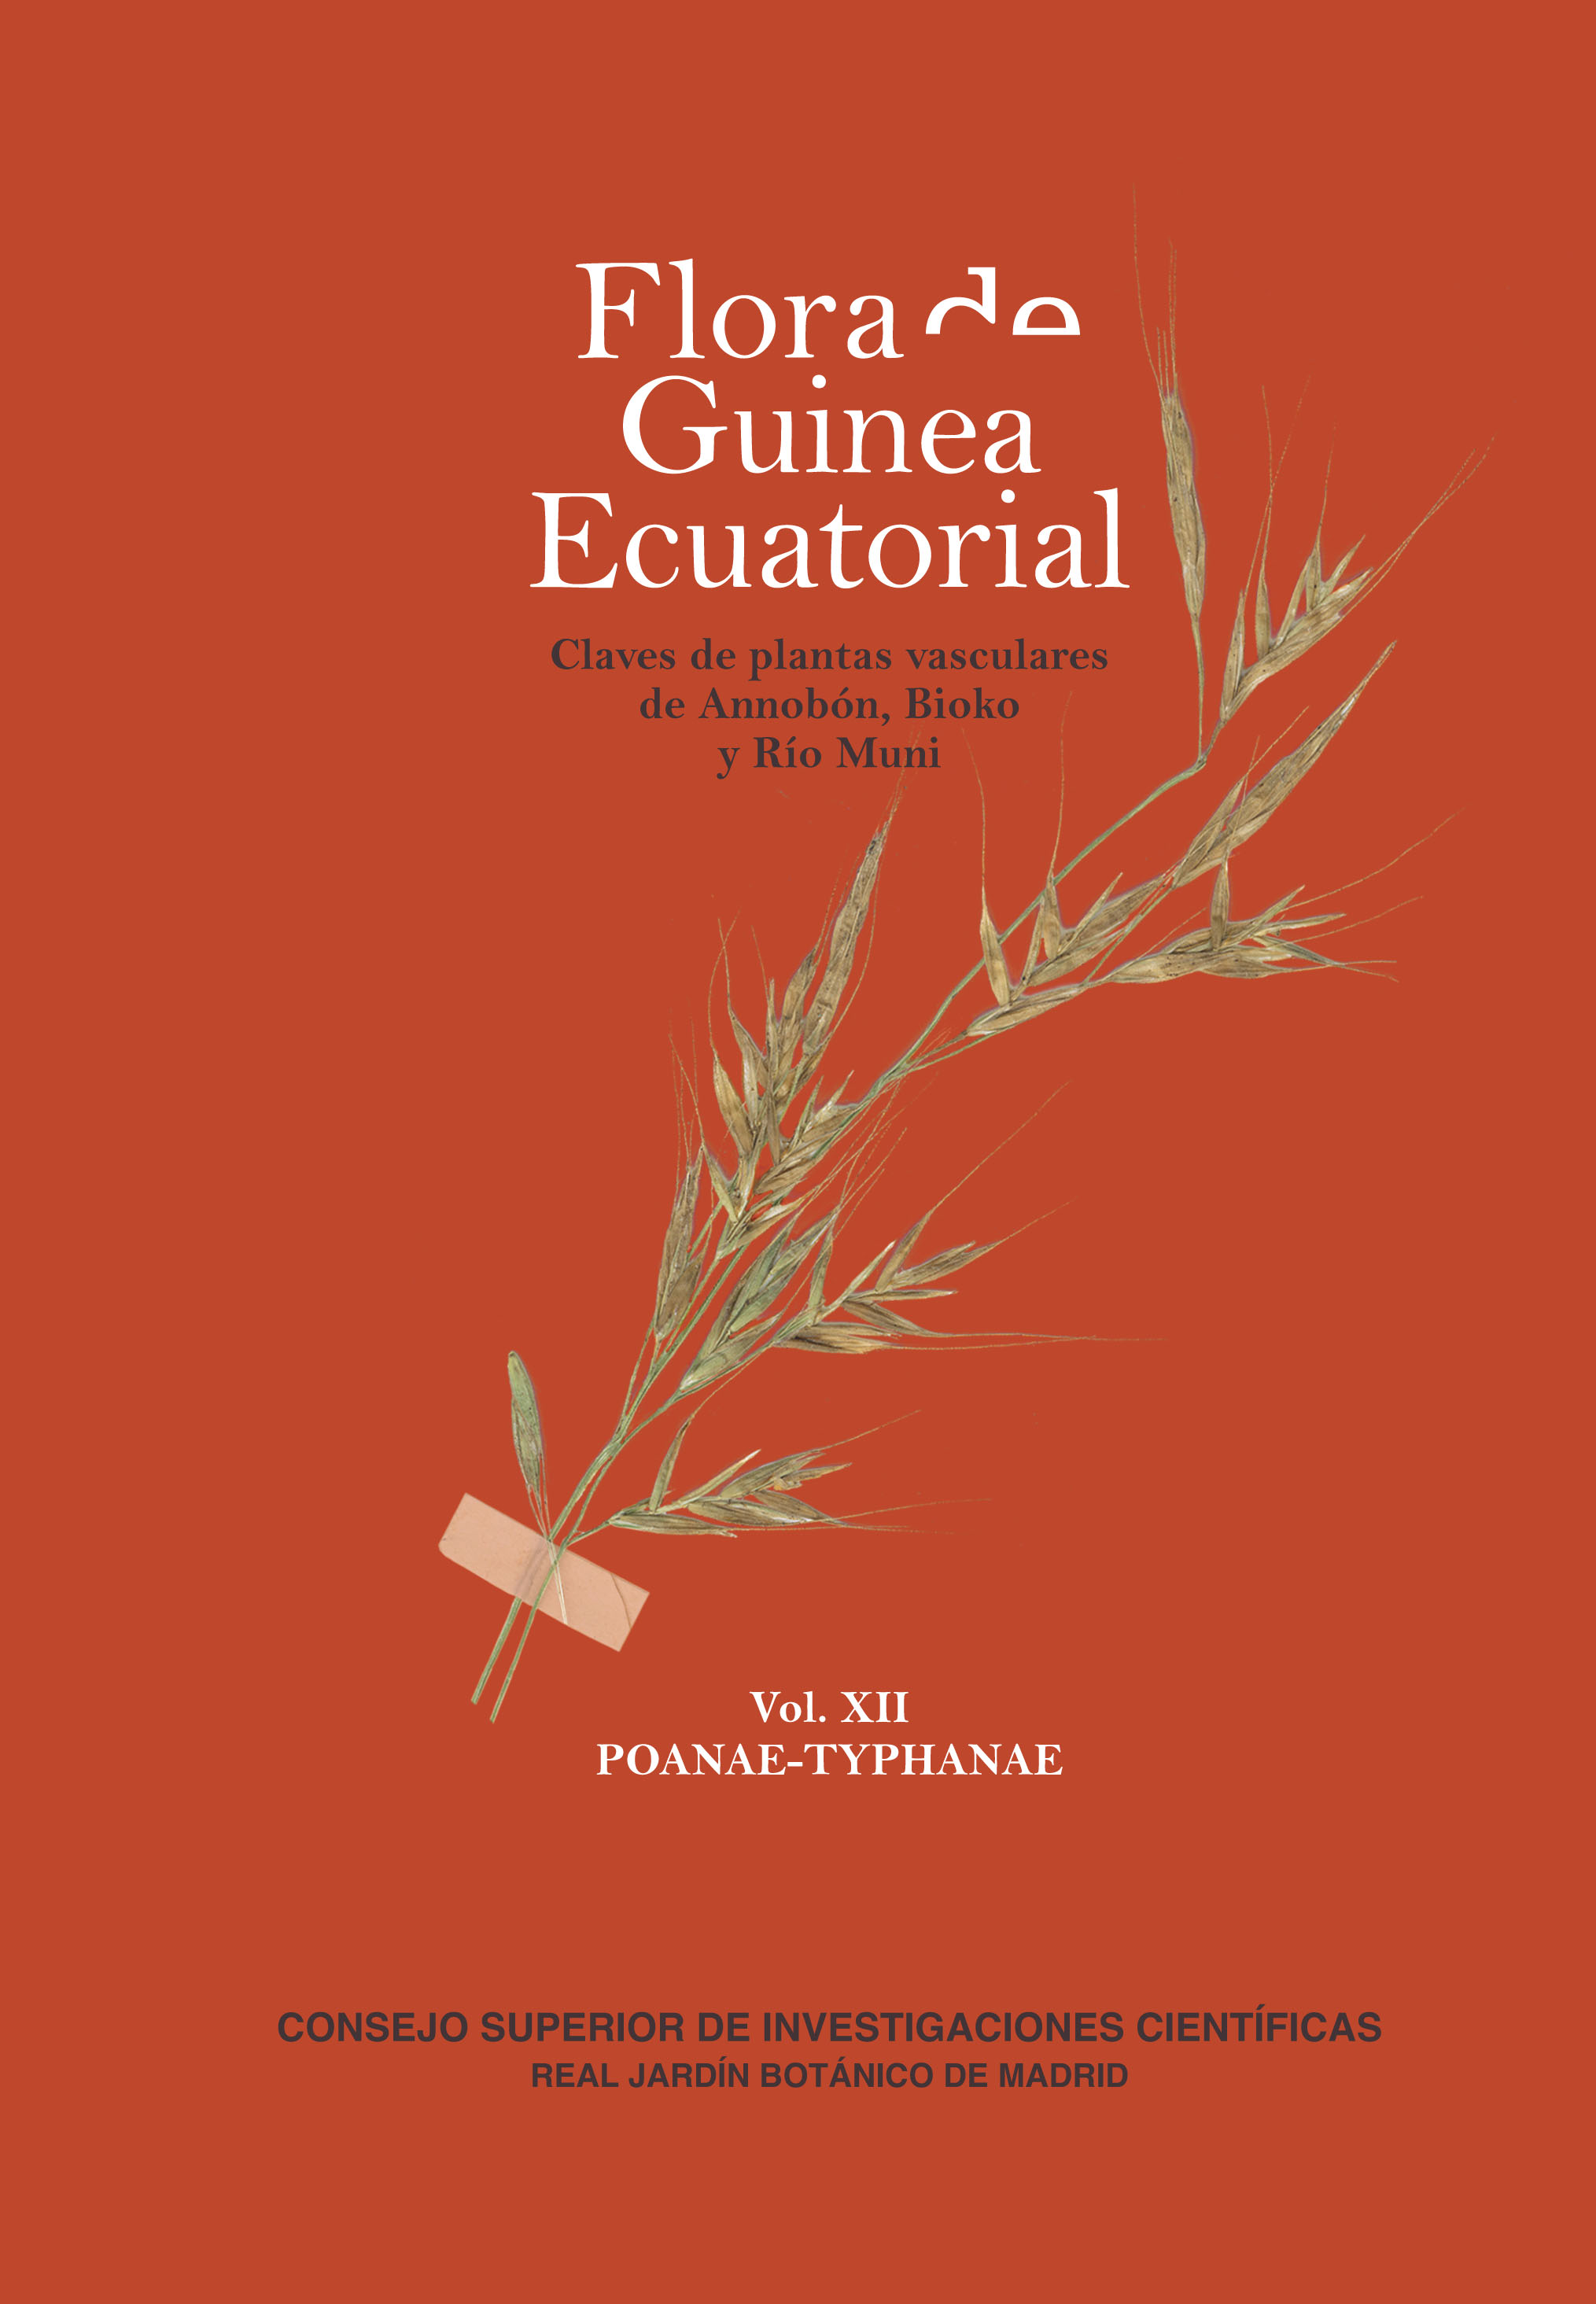 Publicado el volumen XII de Flora de Guinea Ecuatorial